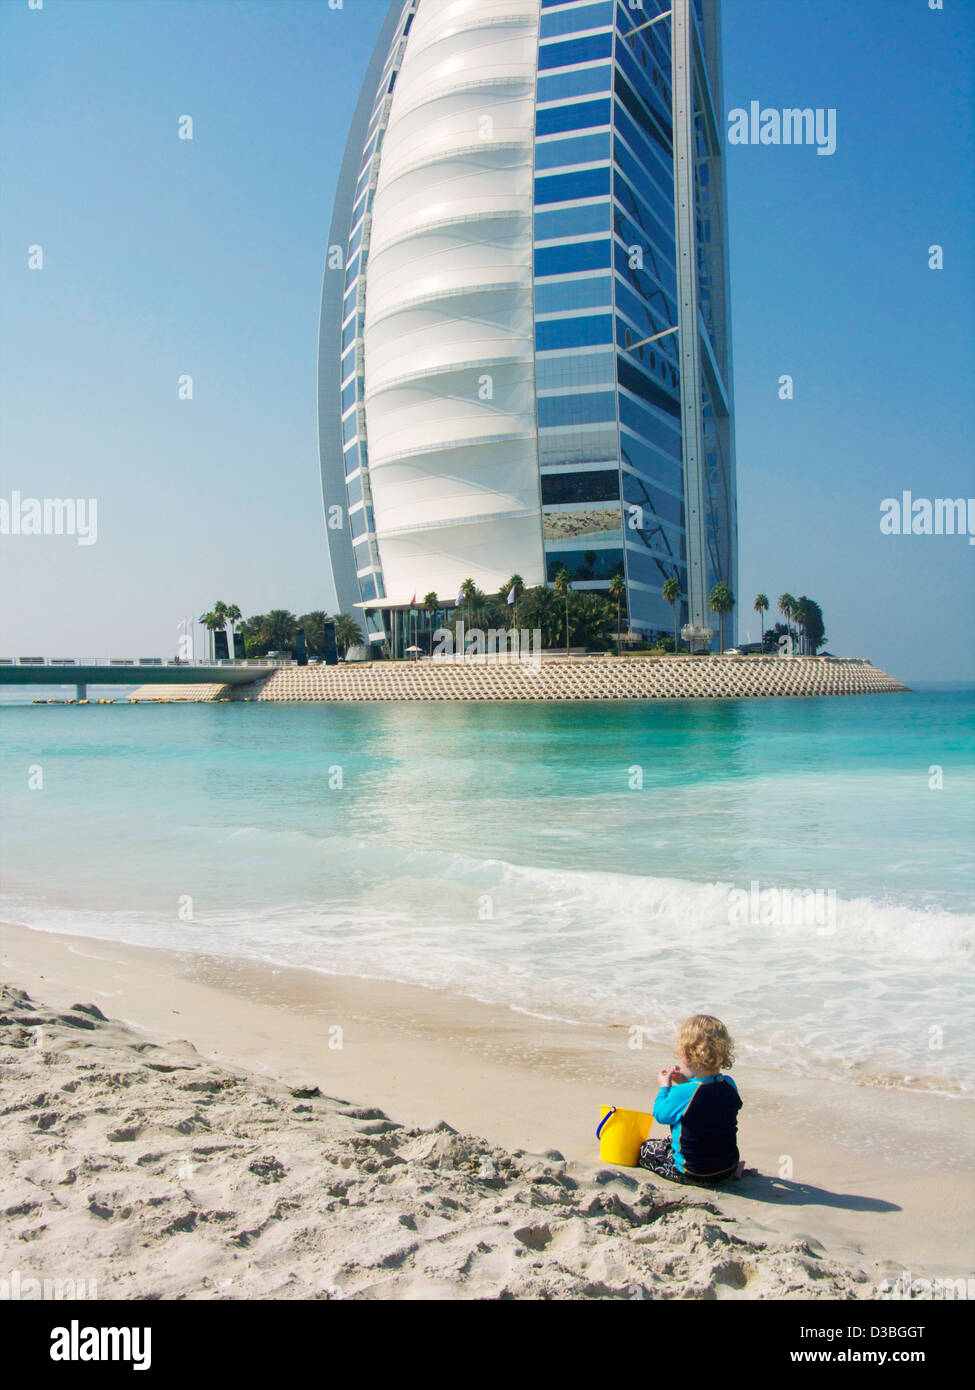 Le sette stelle di 'Sail nel deserto' Burj al Arab Hotel di lusso in background di un piccolo ragazzo giocando sulla spiaggia in Dubai EMIRATI ARABI UNITI Foto Stock